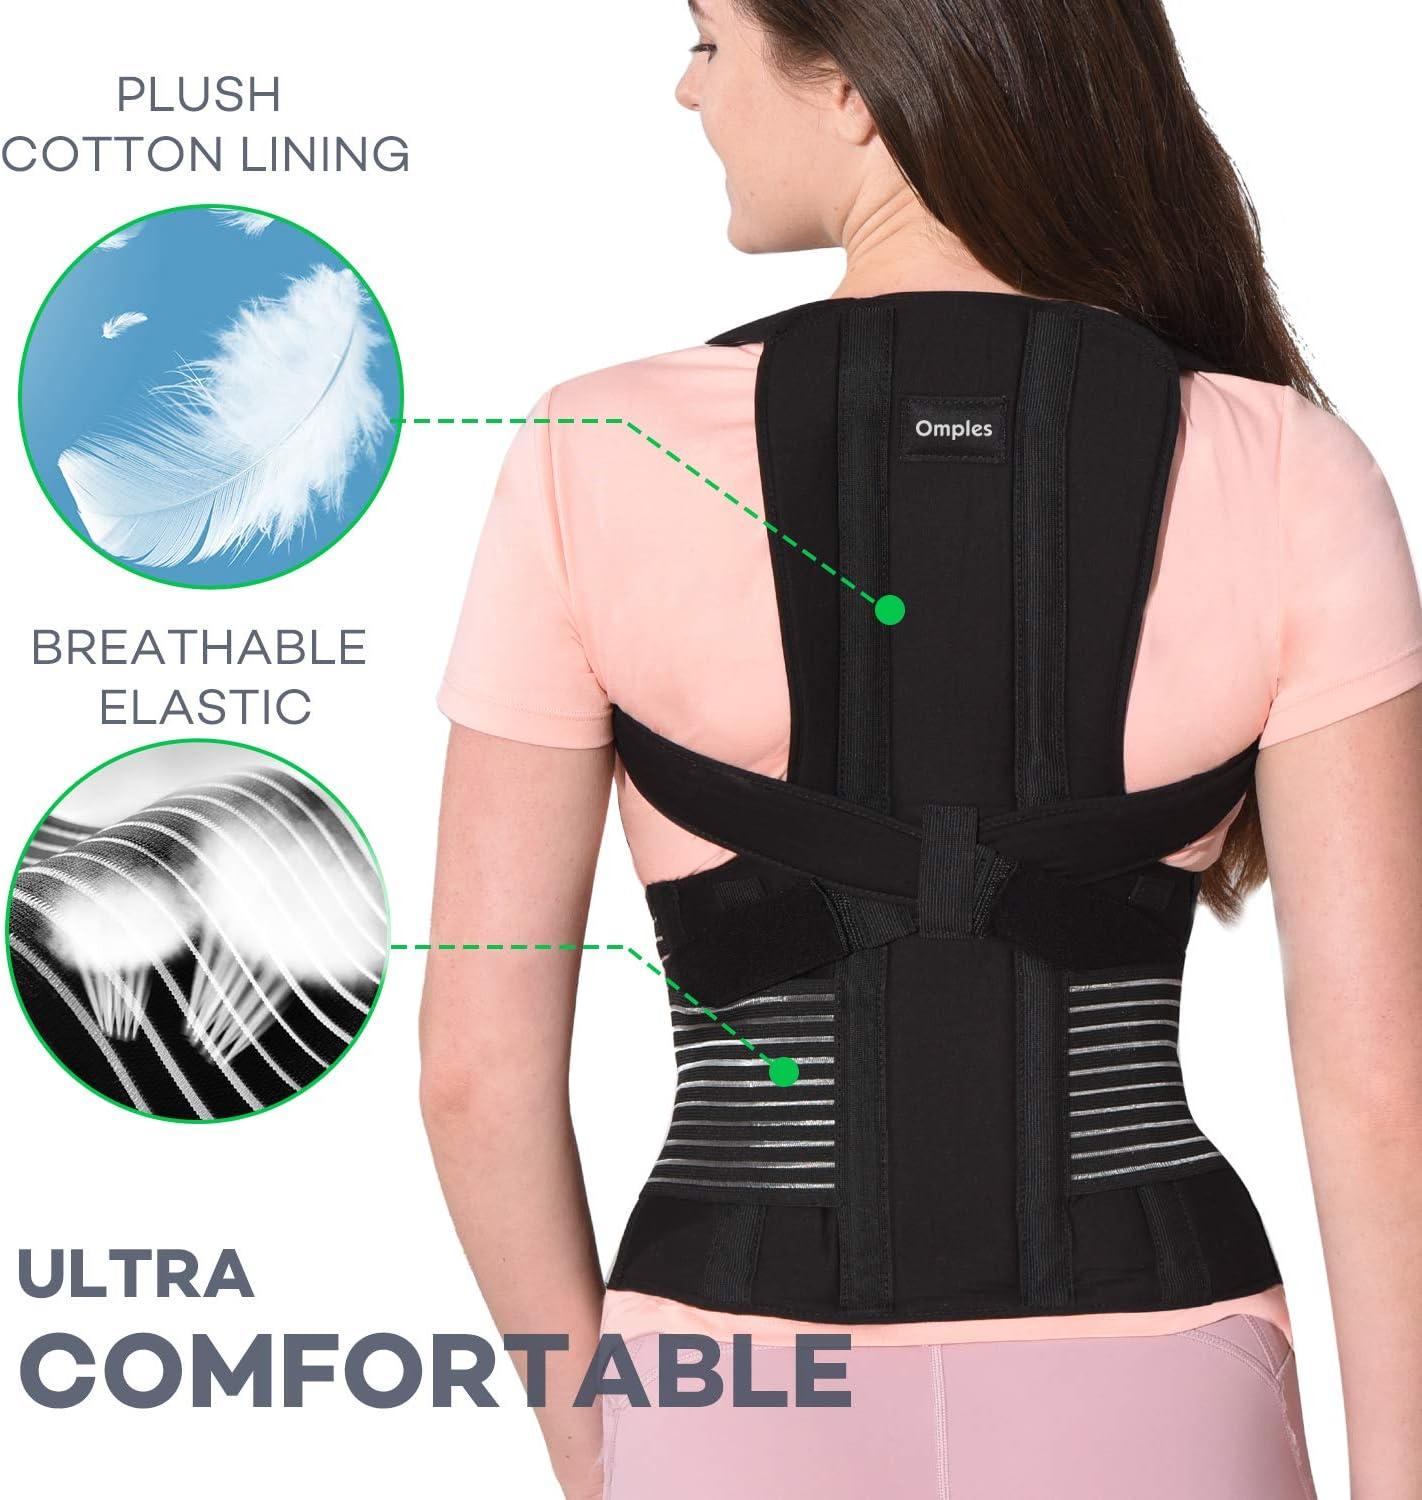 Buy Adjustable Posture Corrector Brace Back Support Belt - Cotton